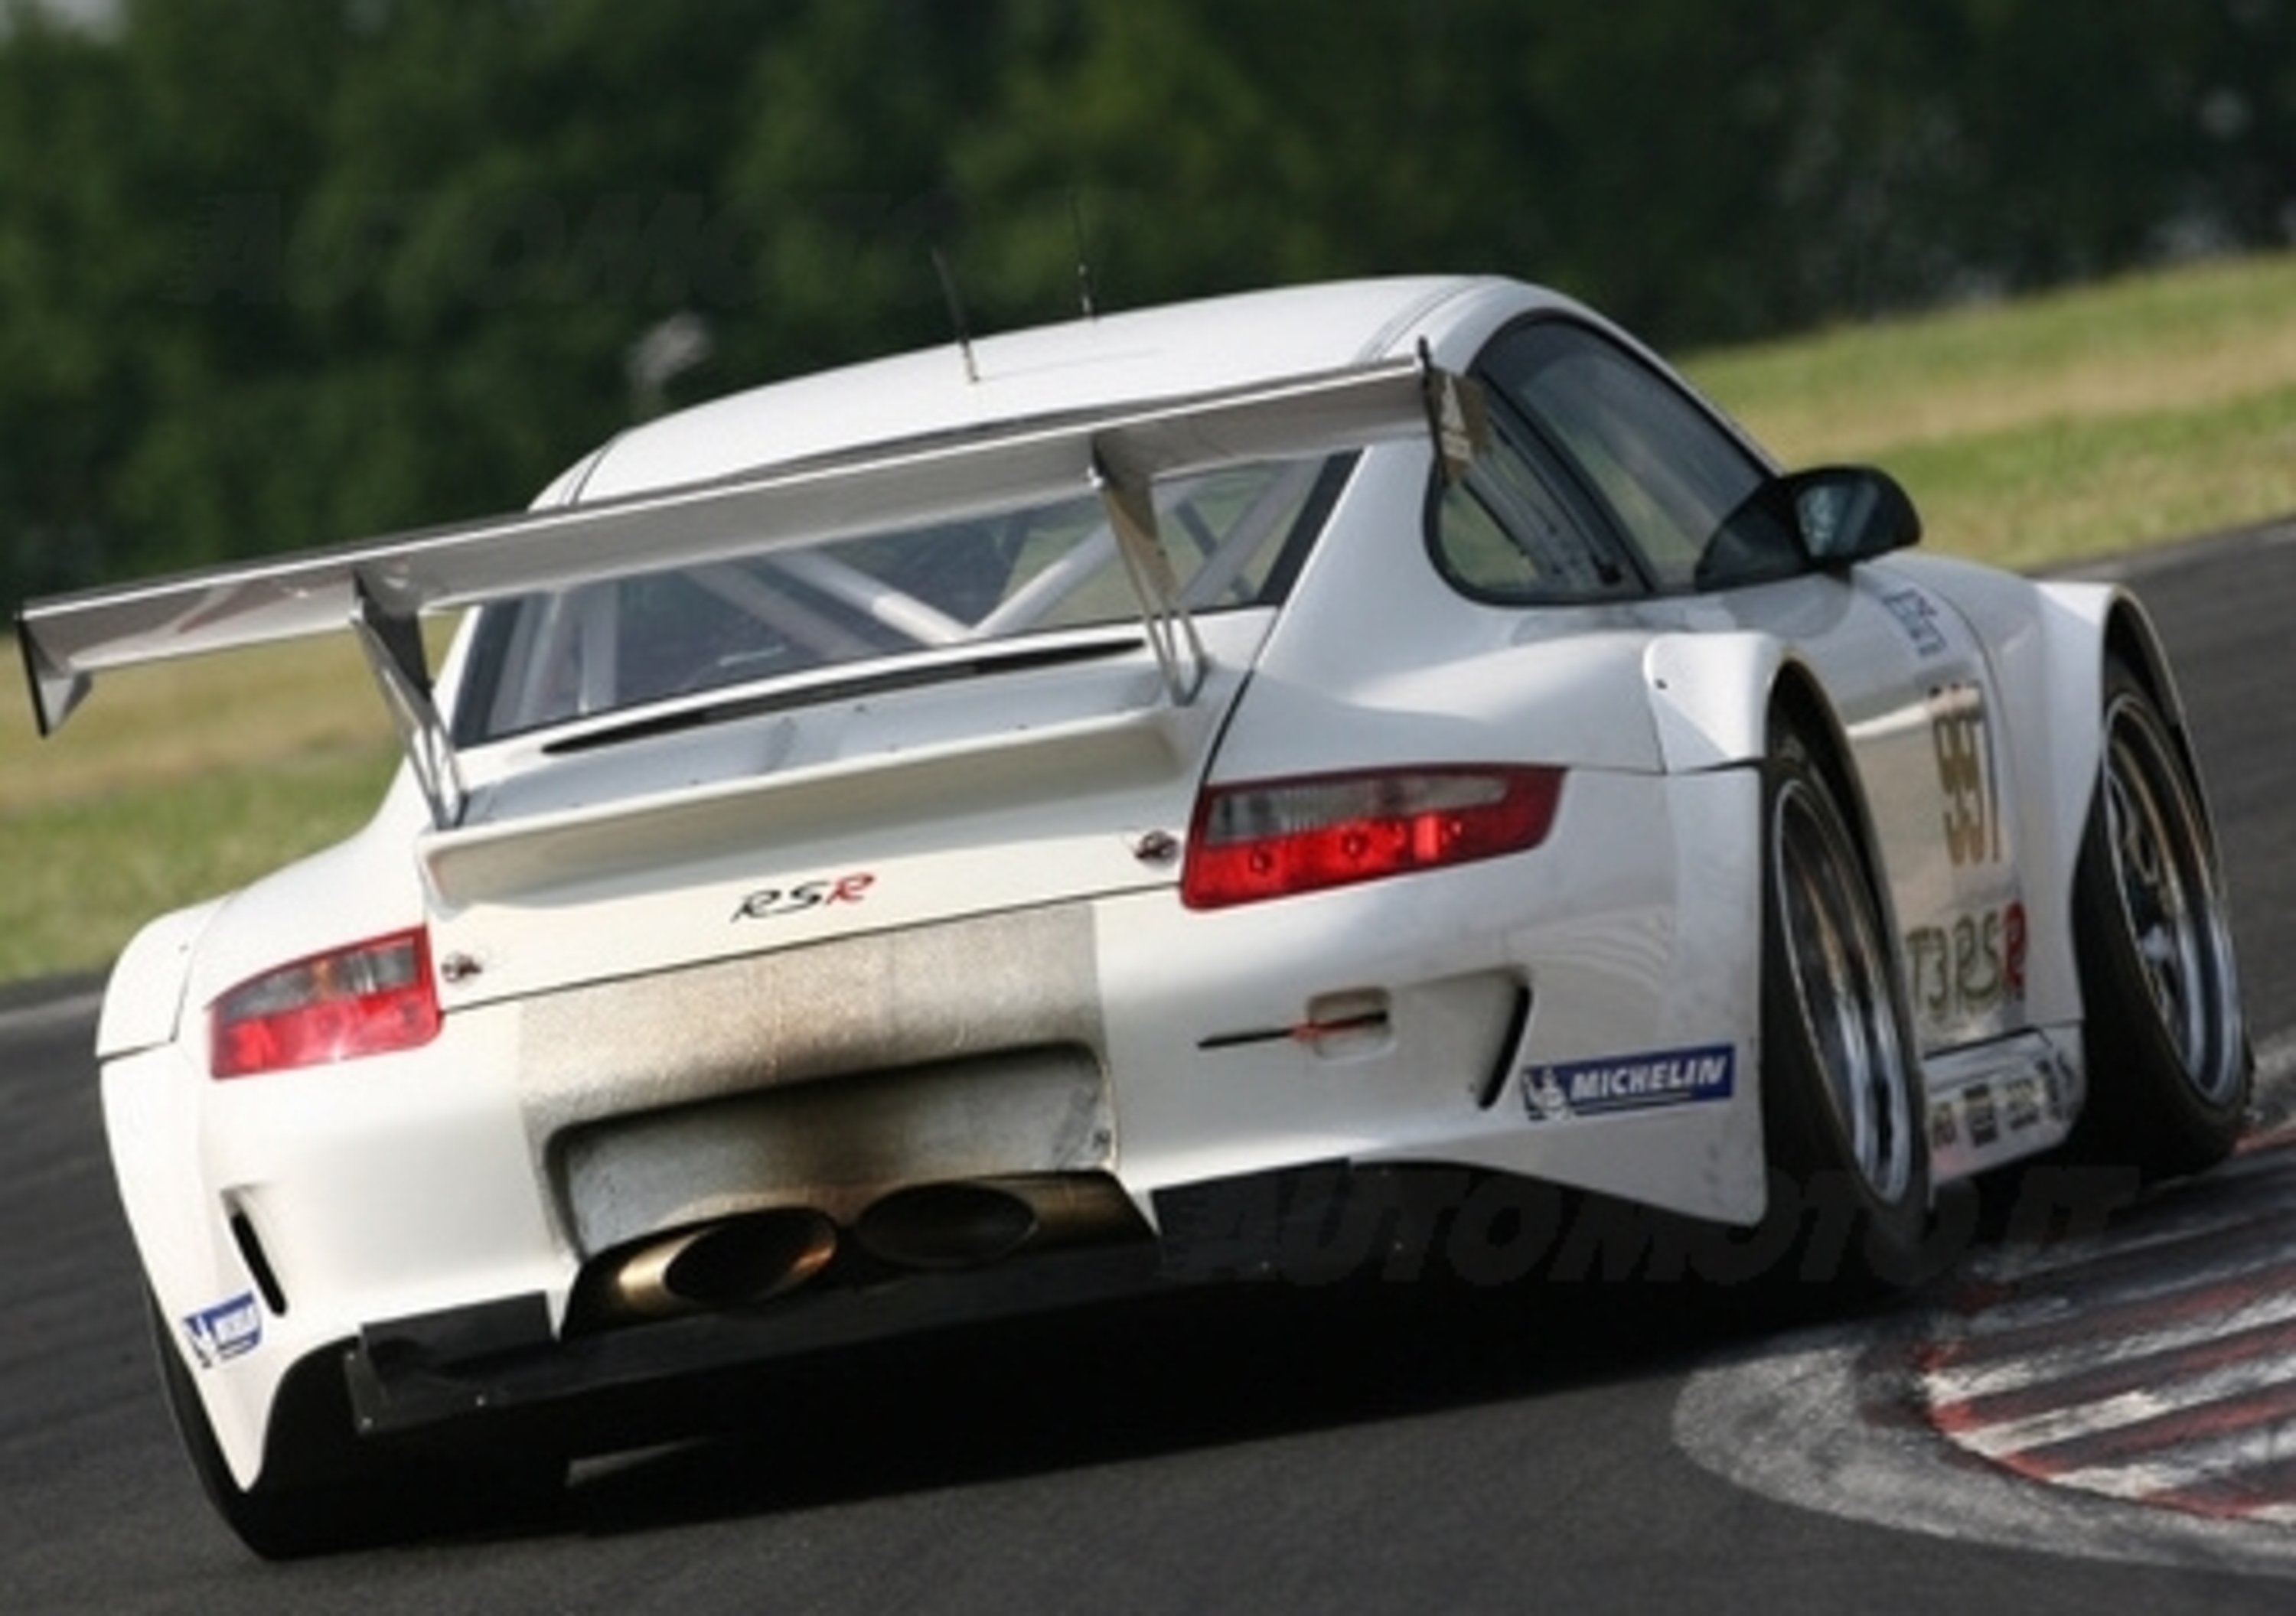 Porsche 911 GT3 RSR (997)